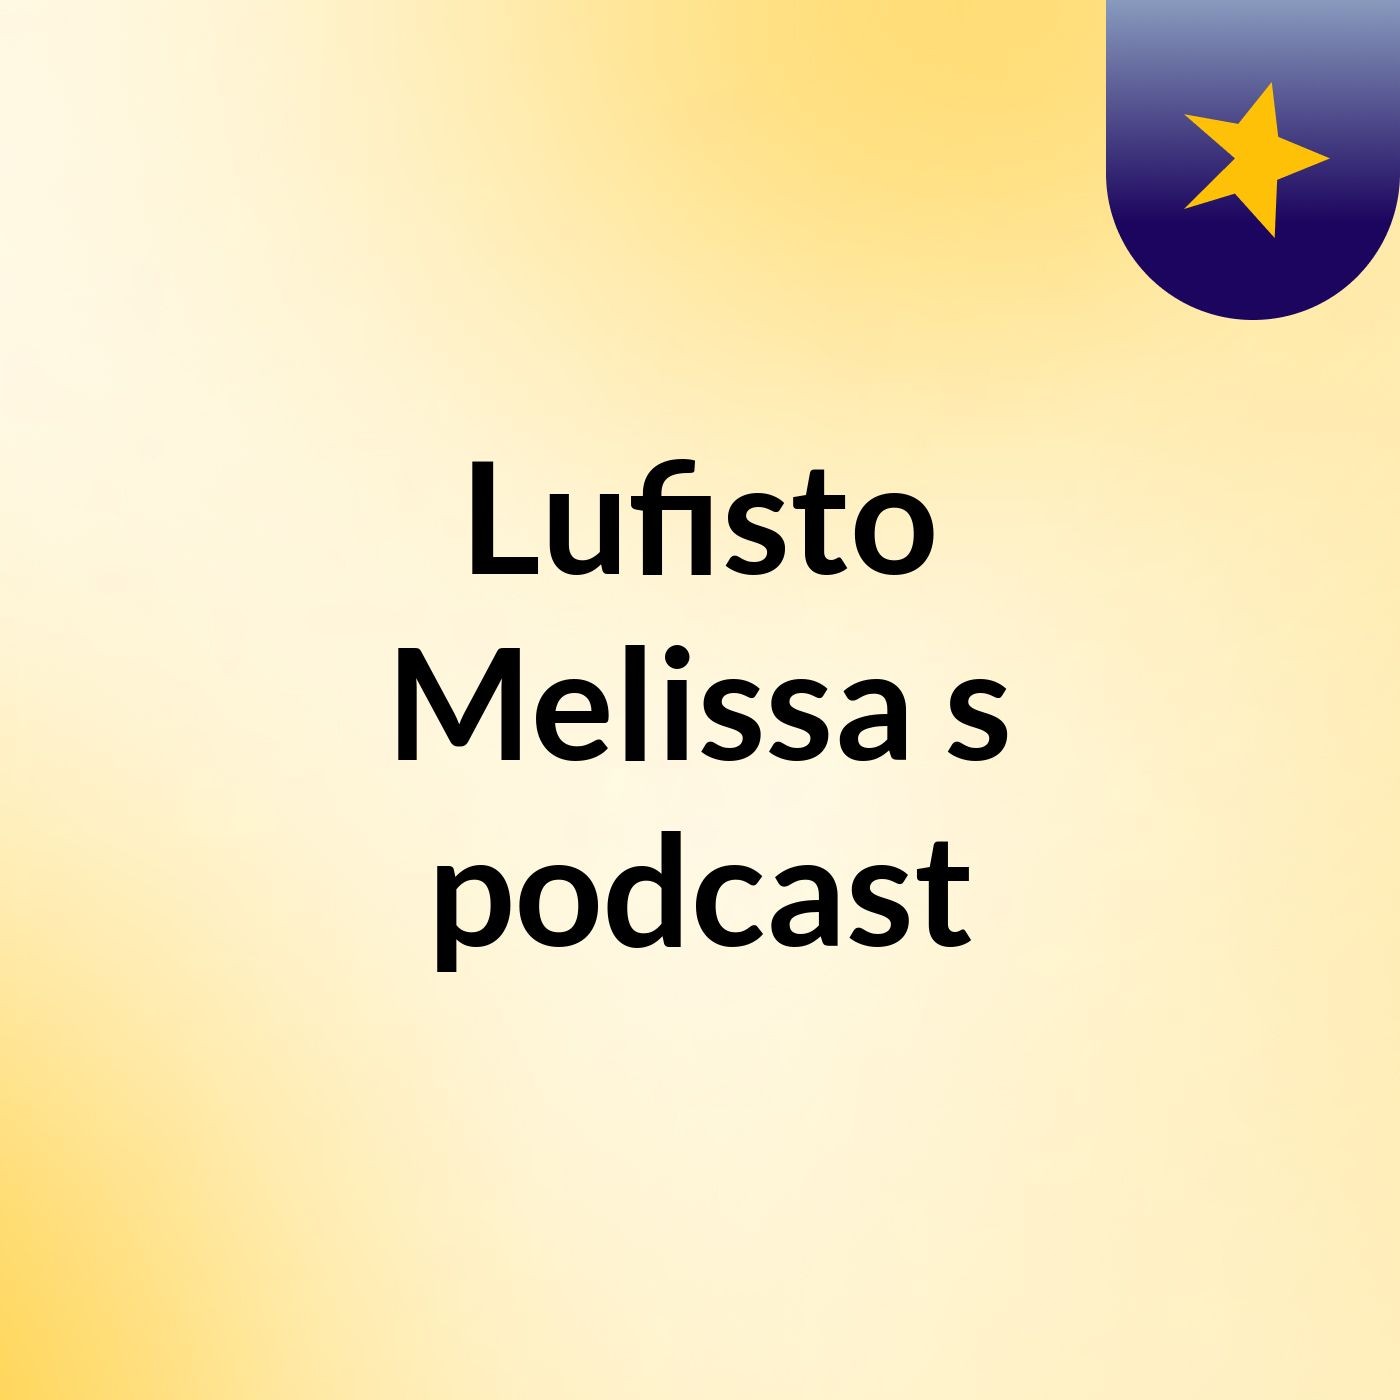 Lufisto Melissa's podcast